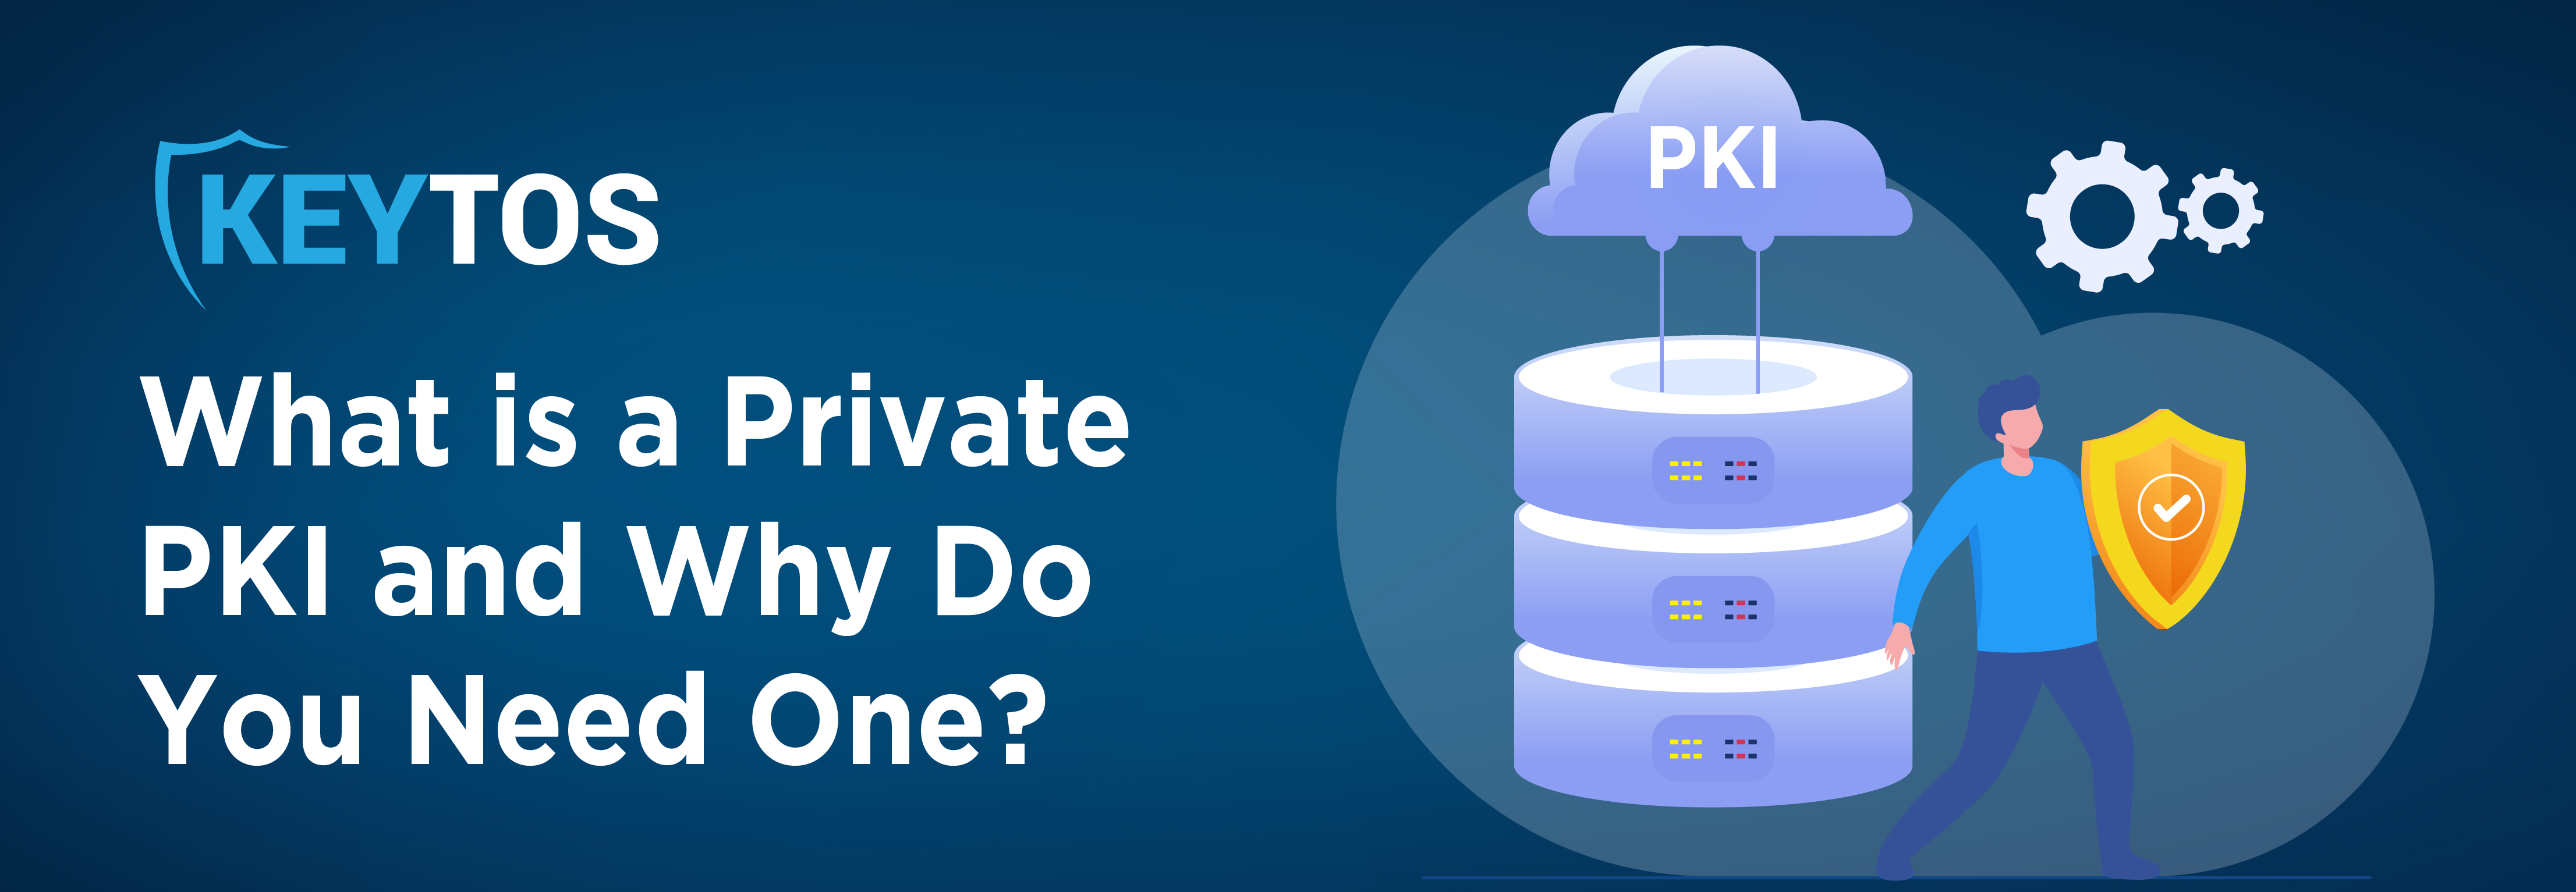 ¿Qué es una PKI privada? ¿Por qué necesitas una PKI privada? PKI privada explicada.